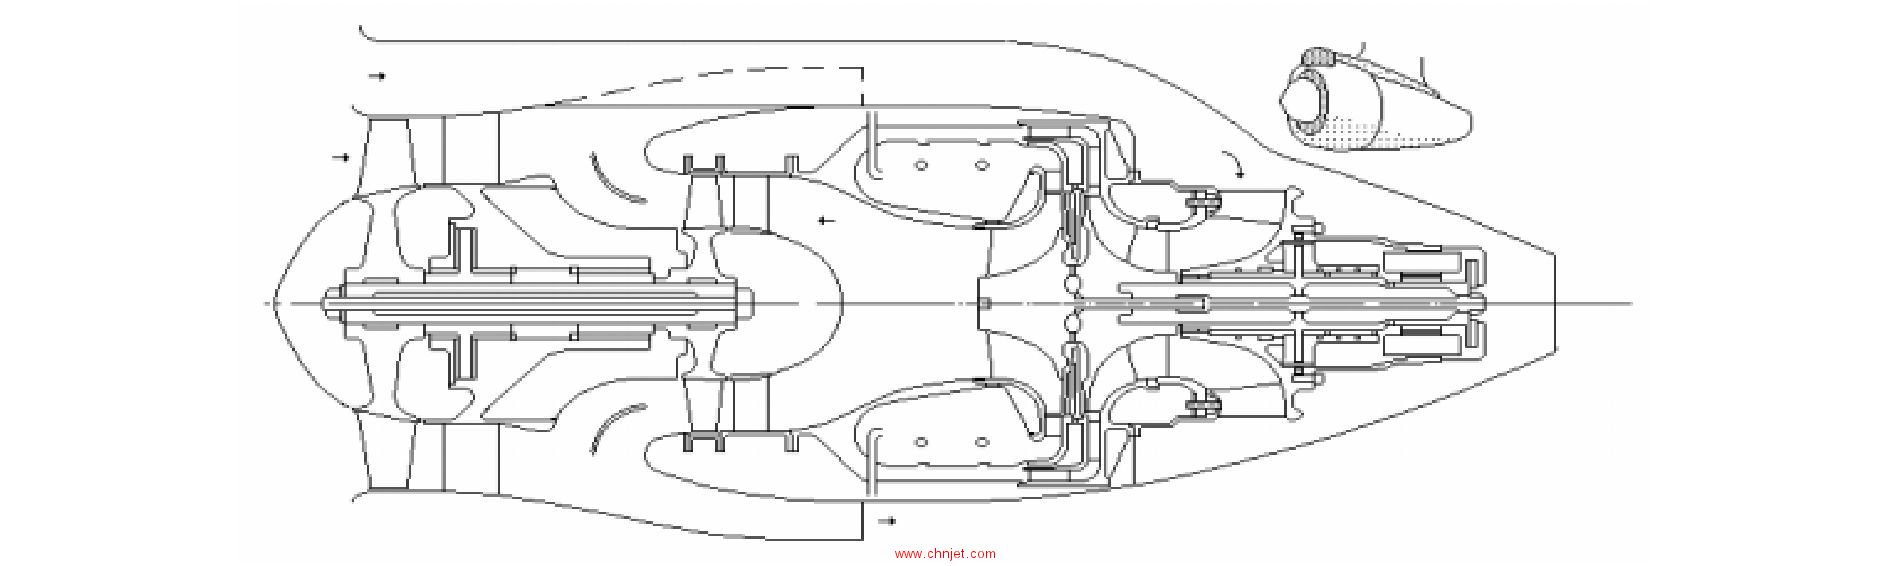 新型微型涡扇方案及其复合压缩转子初步设计